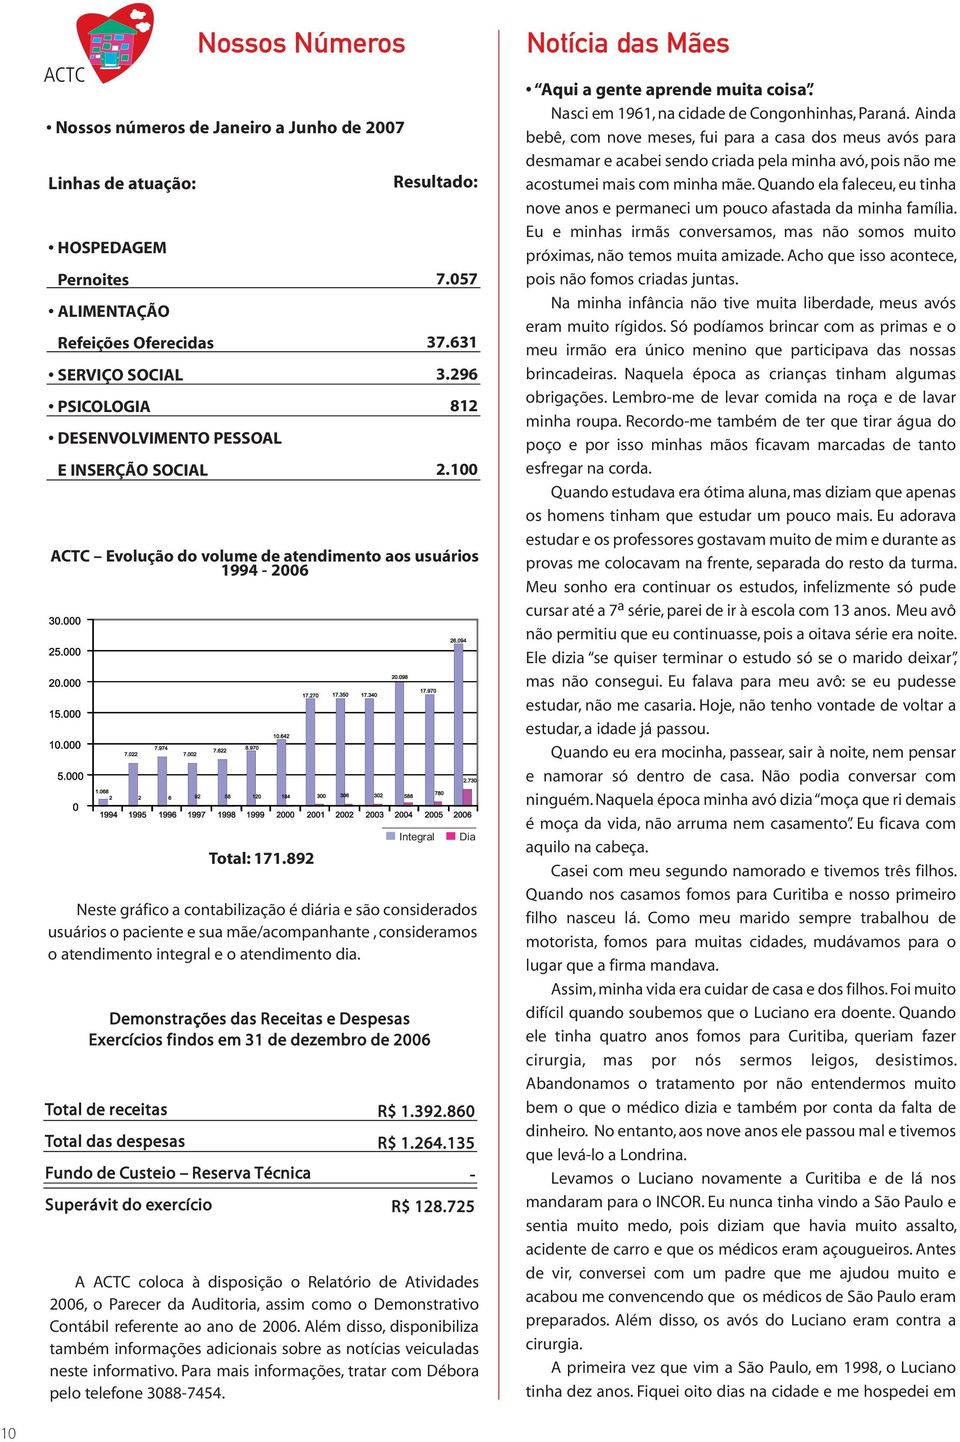 Demonstrações das Receitas e Despesas Exercícios findos em 31 de dezembro de 2006 Total de receitas Total das despesas Fundo de Custeio Reserva Técnica Superávit do exercício Nossos Números Total: